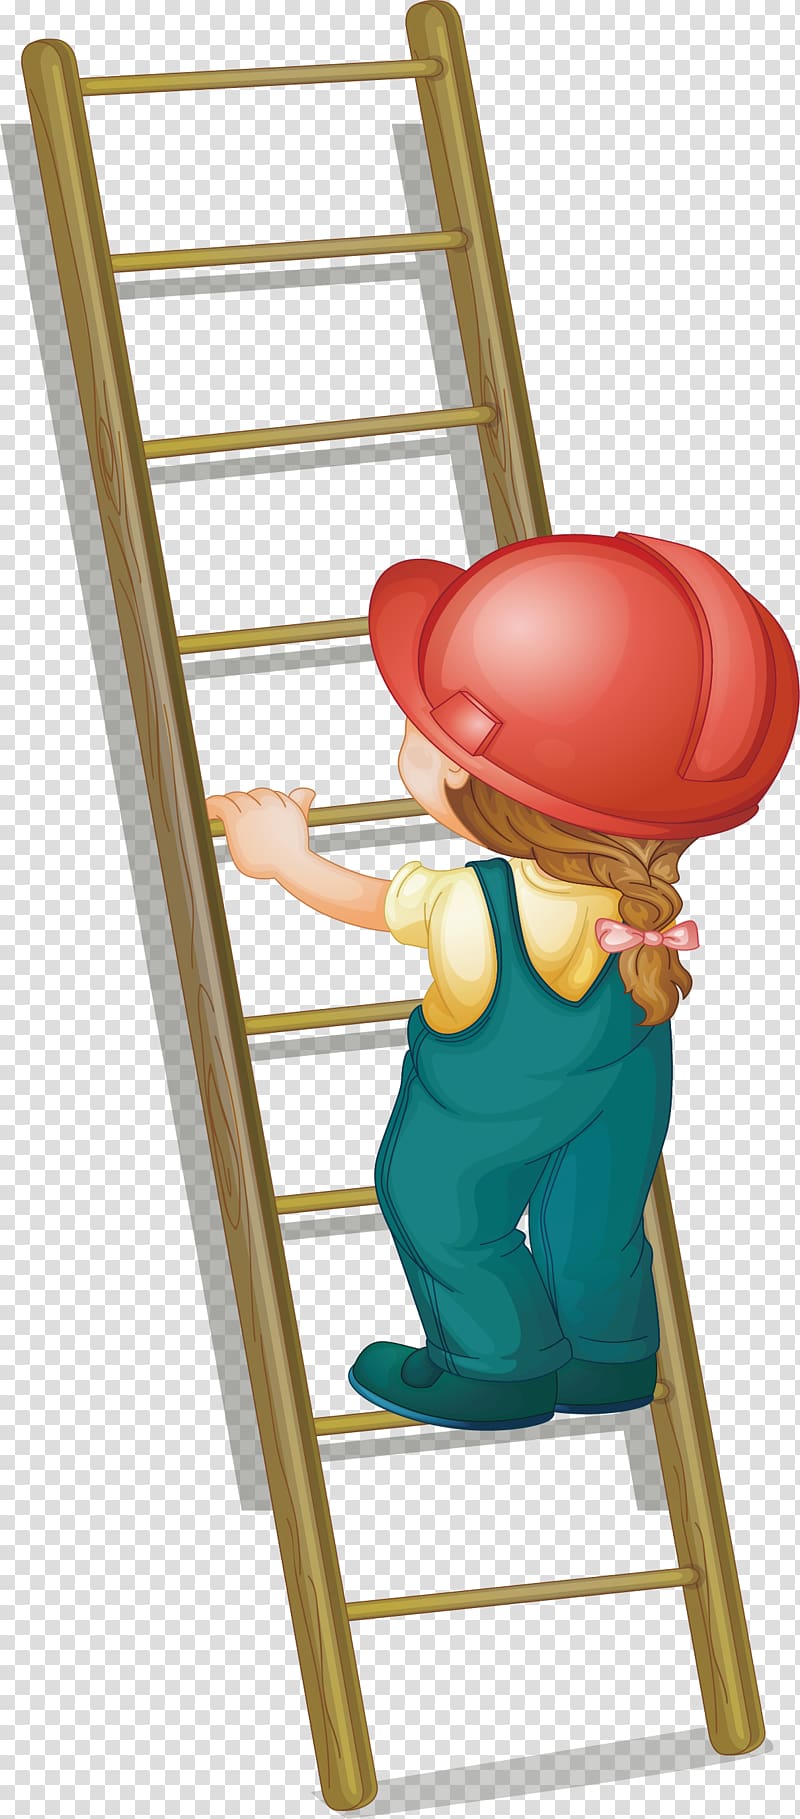 Ladder illustration step.